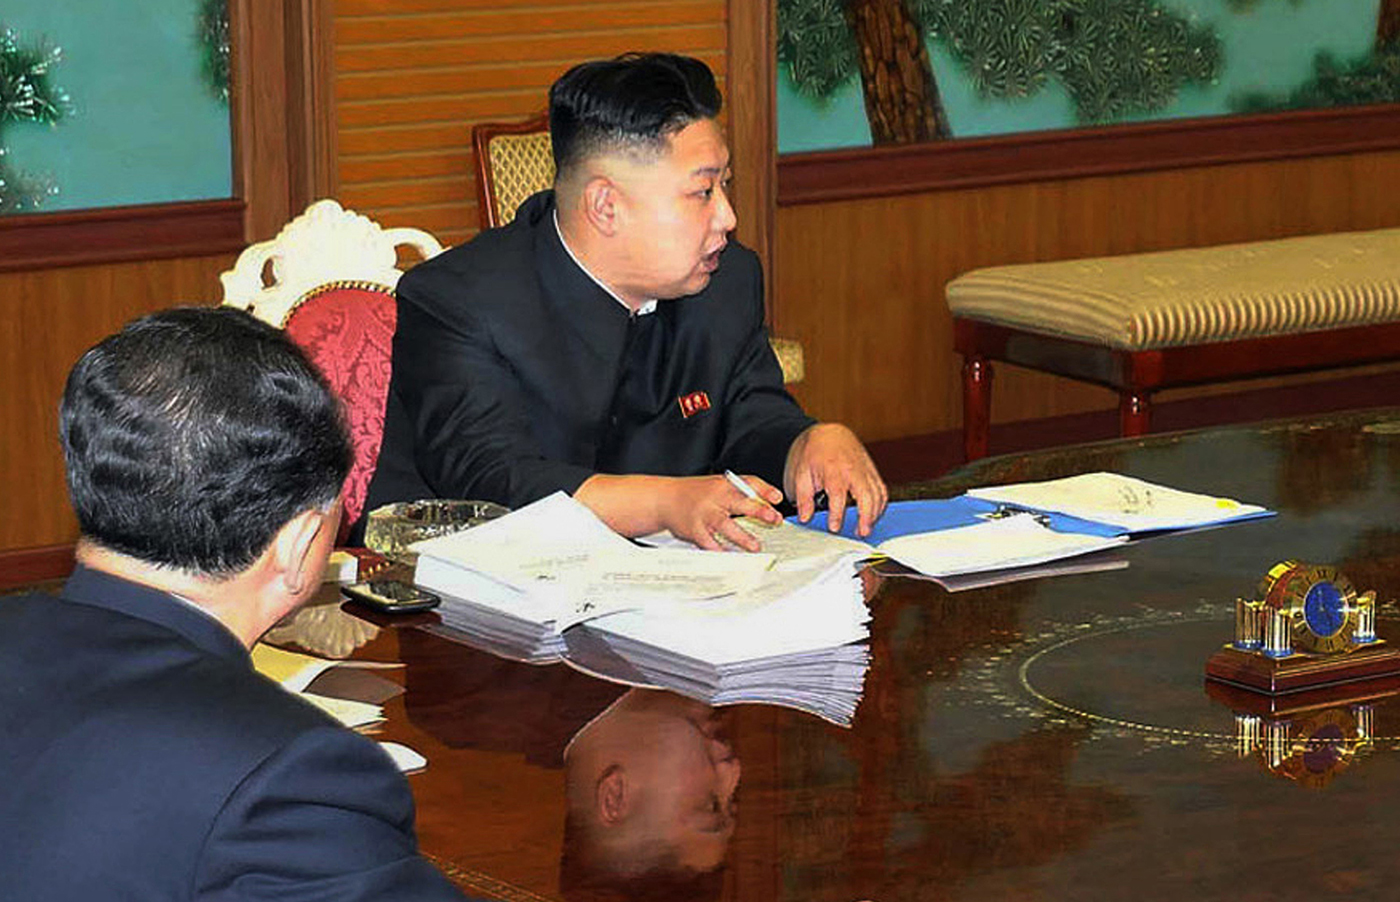 Kim Jong-Un tiene un “smartphone”, y los norcoreanos no tienen acceso a internet (Fotos)